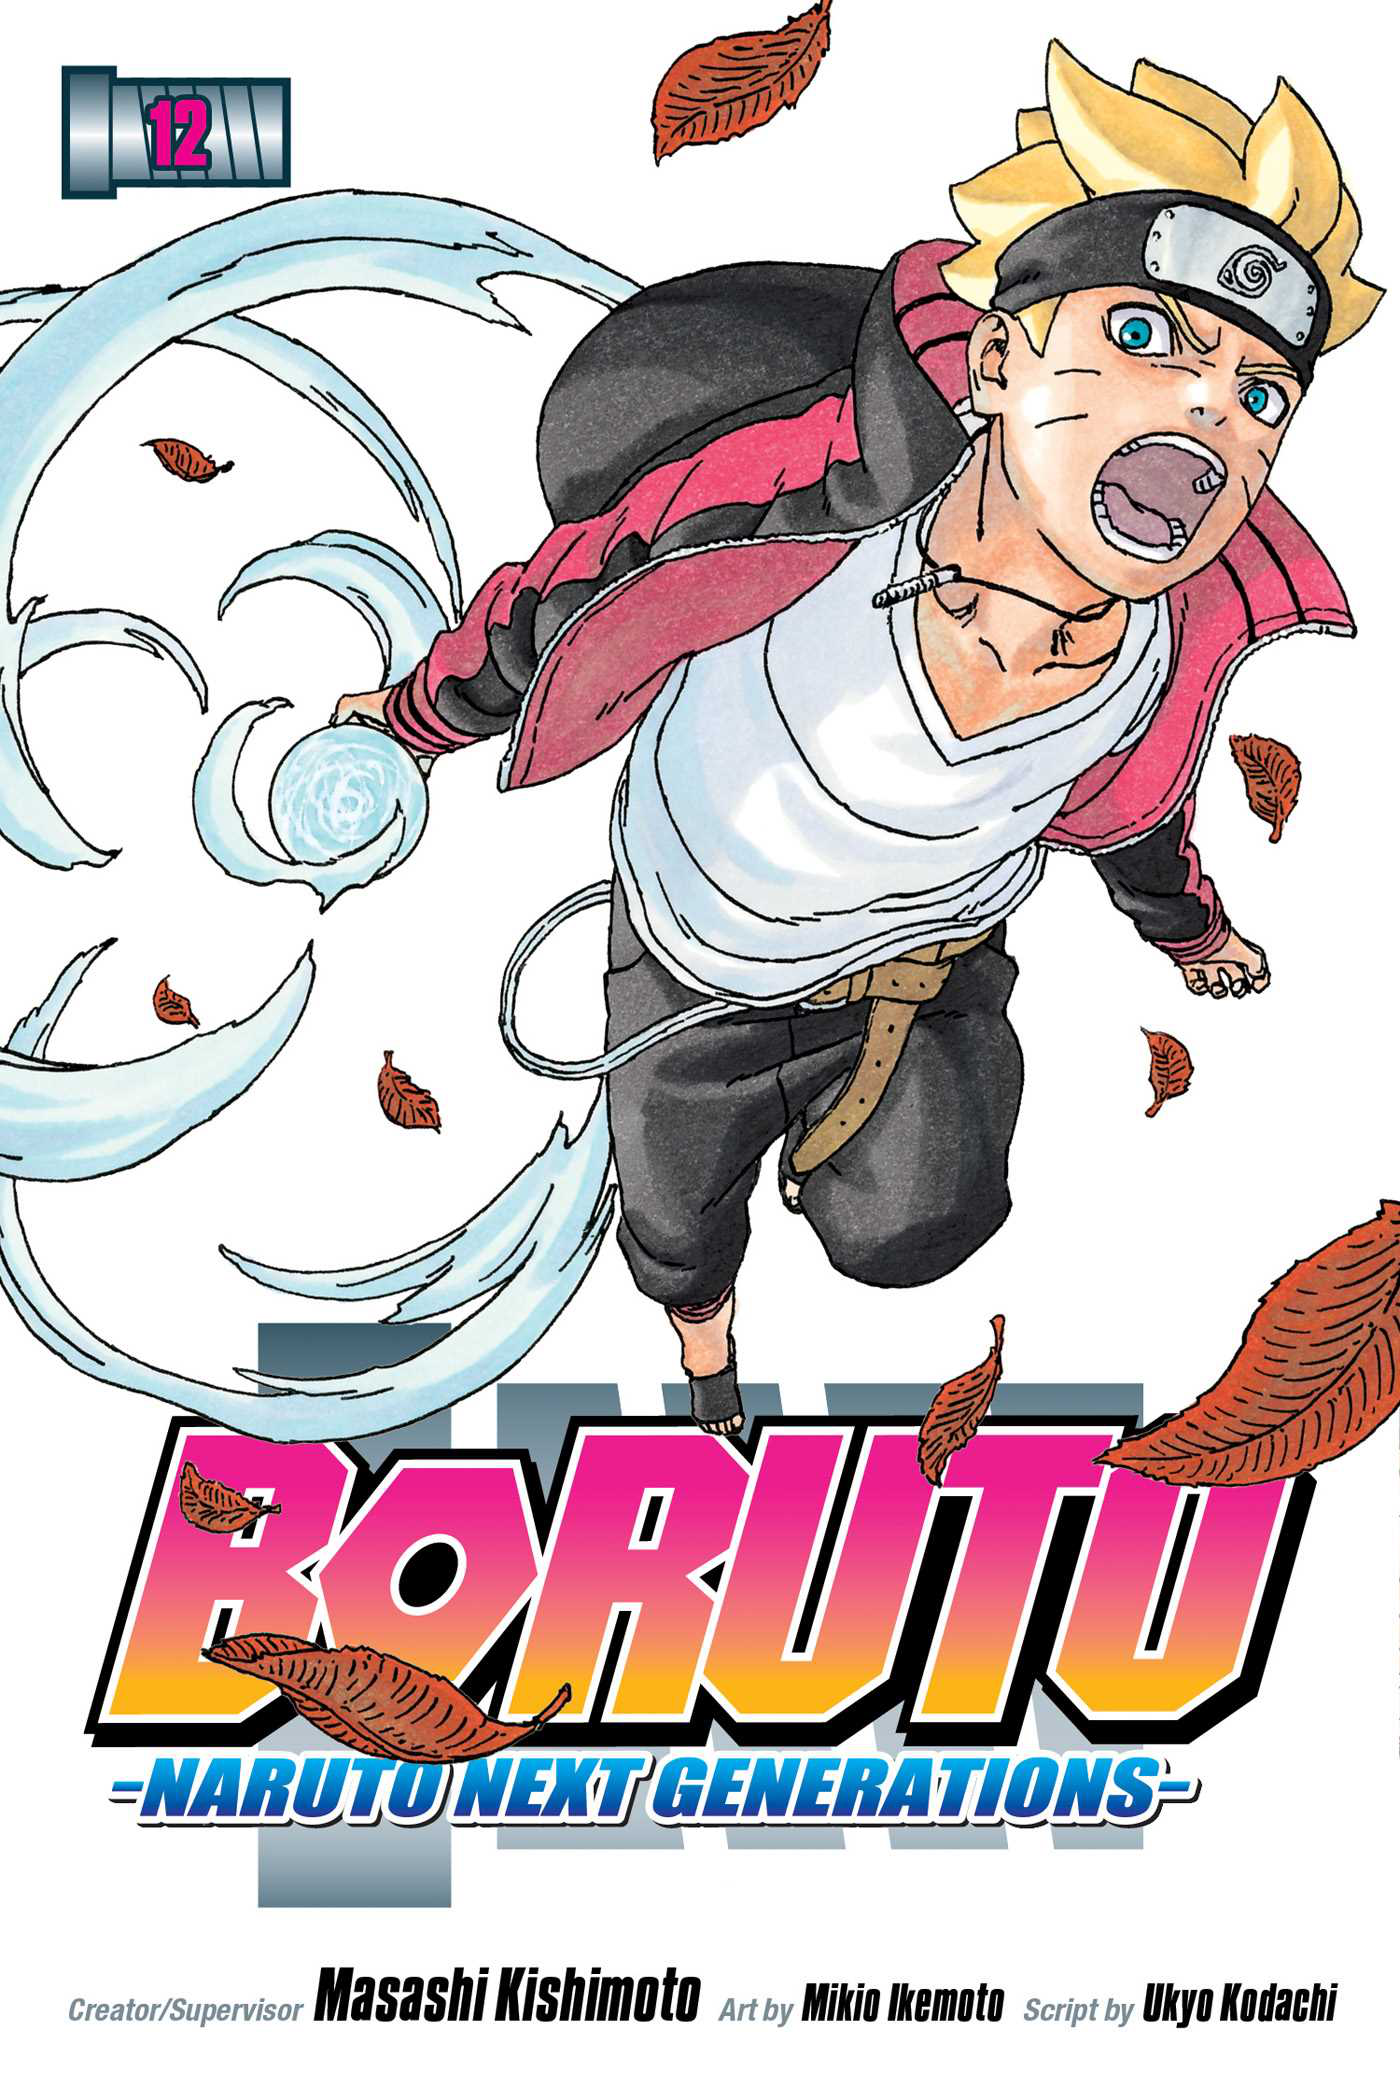 Boruto: Naruto Next Generations, Boruto Wiki